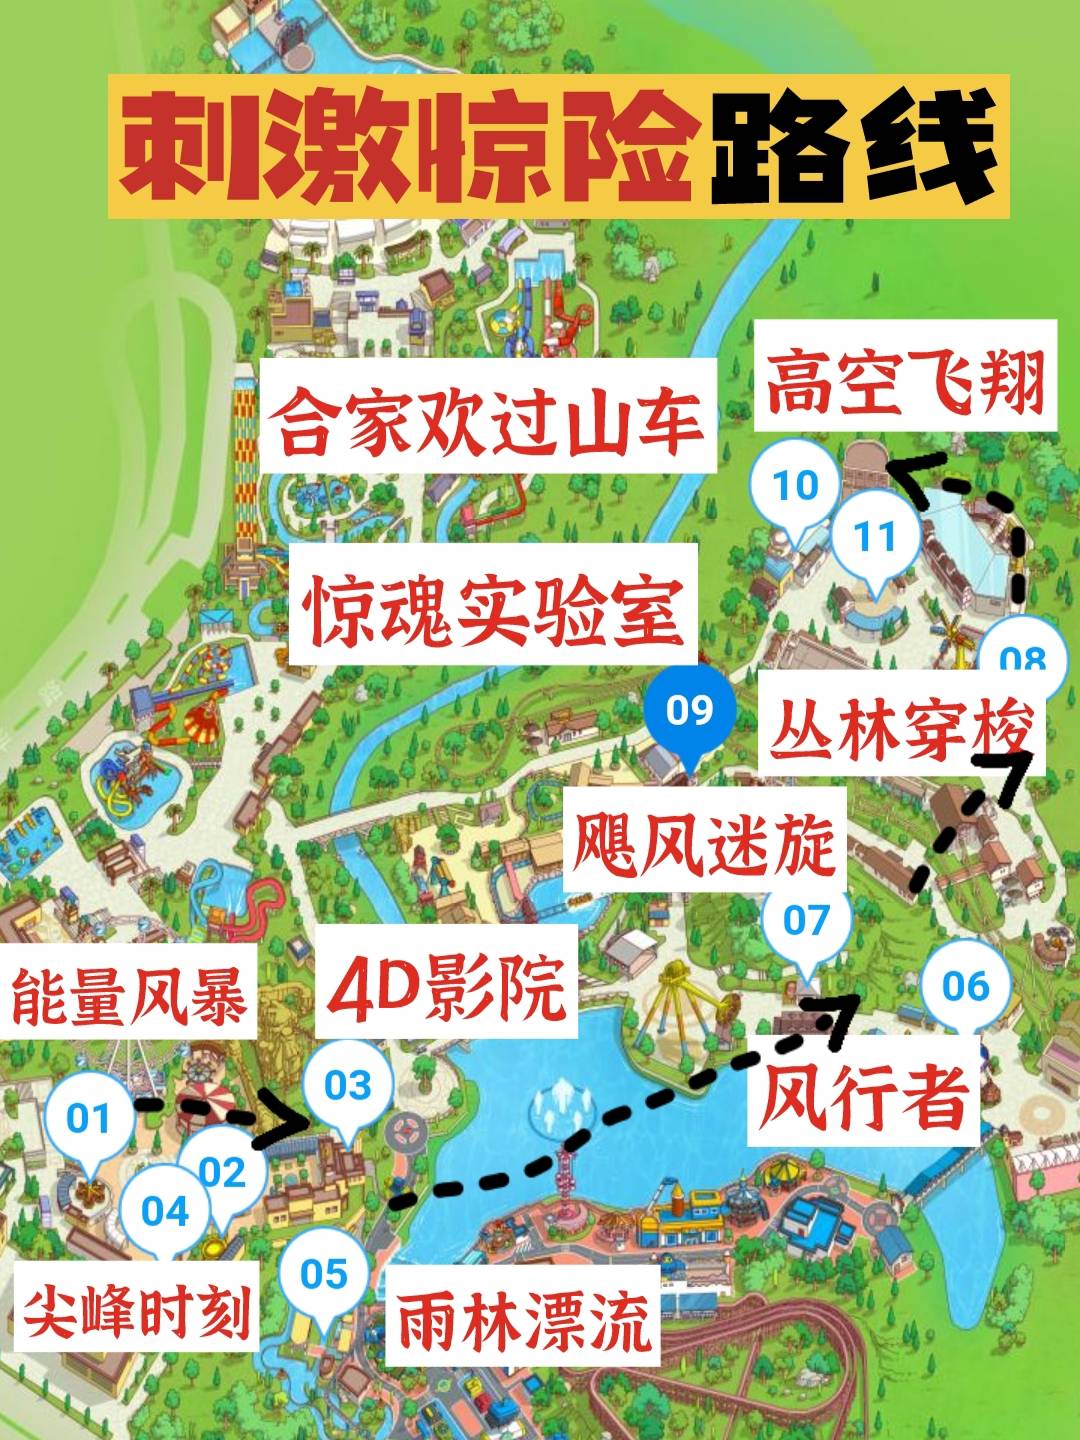 重庆欢乐谷在哪个地方图片